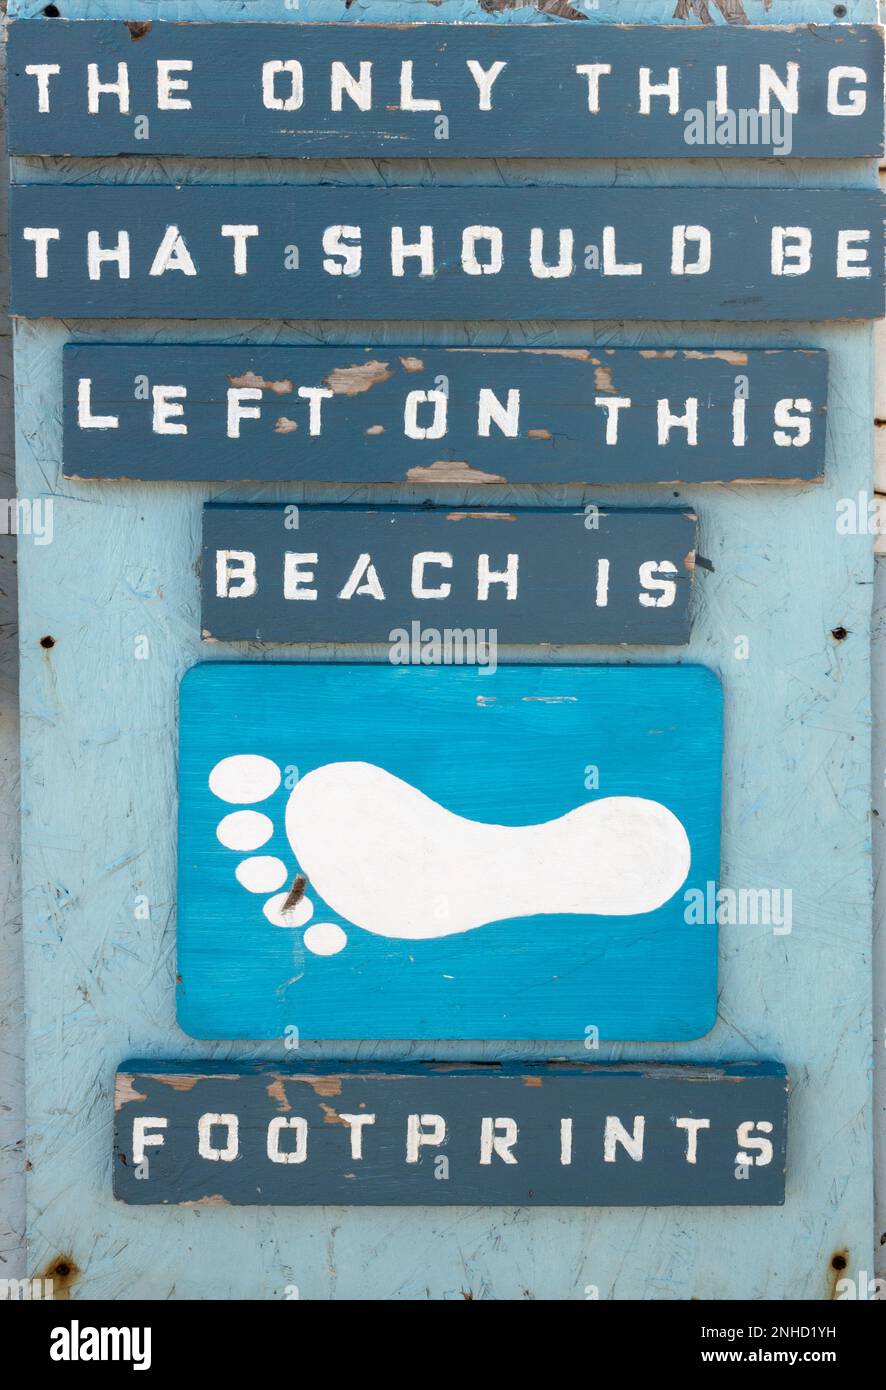 Observe o firme lo único que debe quedar en esta playa es Footprints, Seaham, Co Durham, Inglaterra, Reino Unido Foto de stock